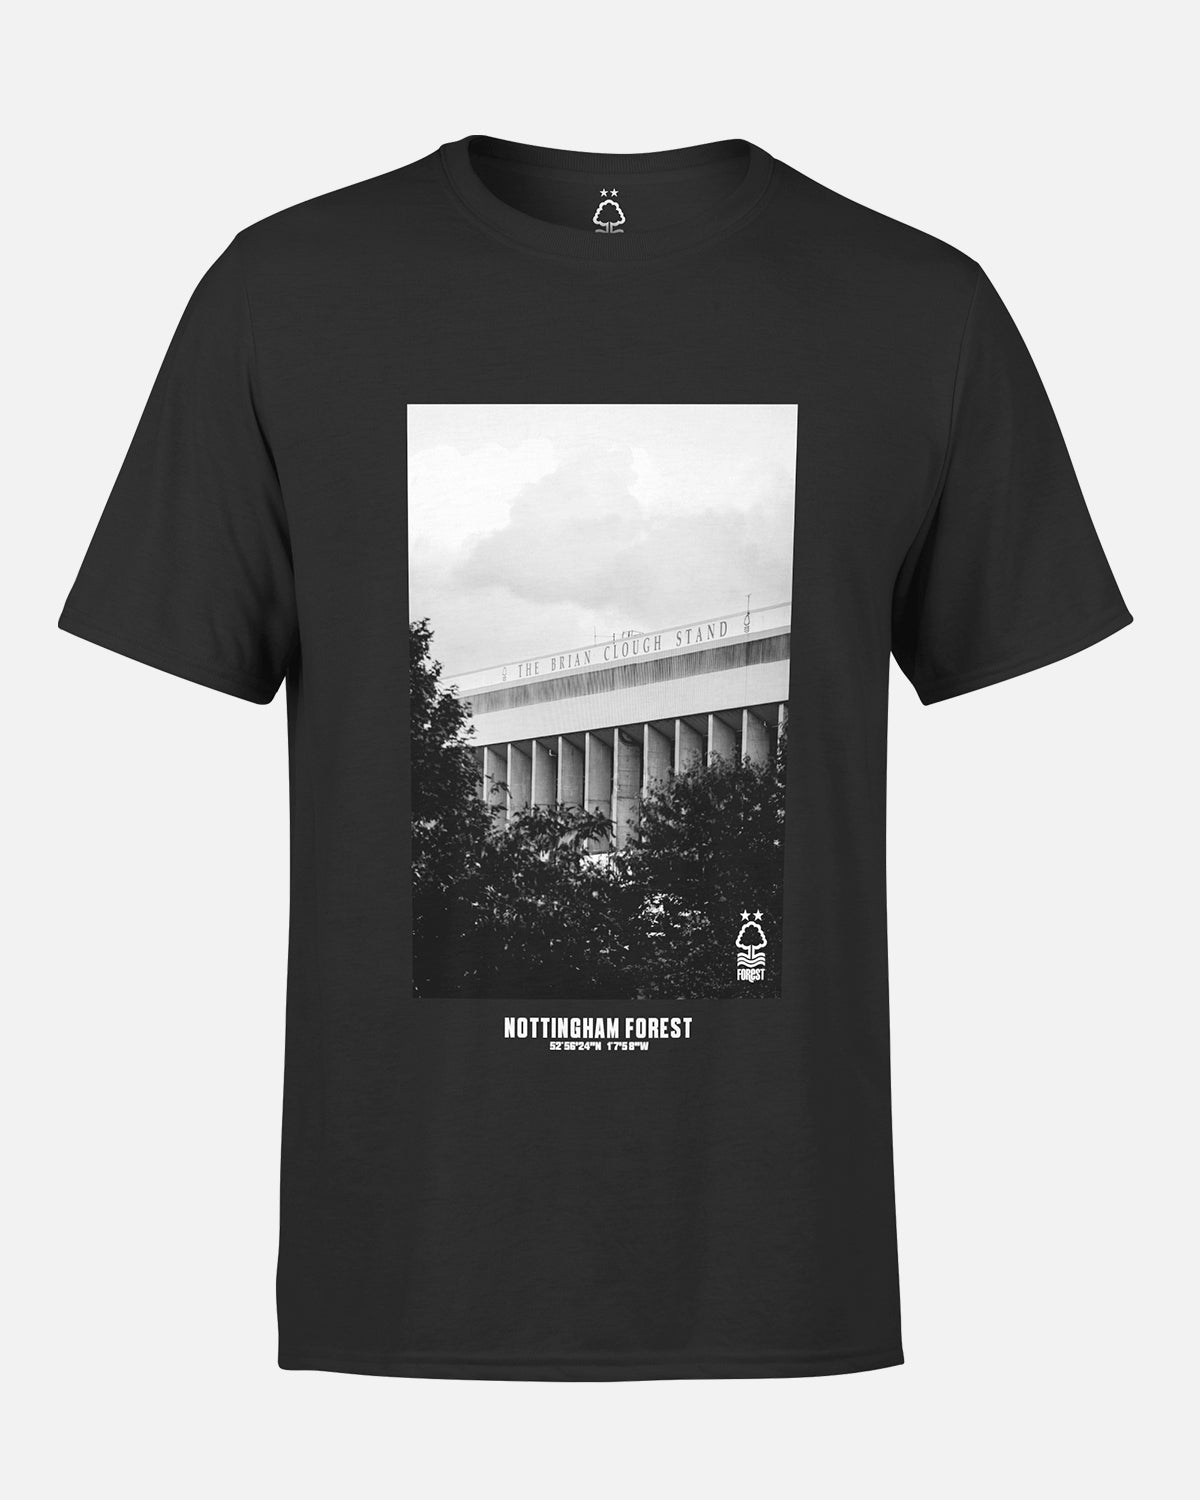 NFFC Black Clough Stand Photo Print T-Shirt